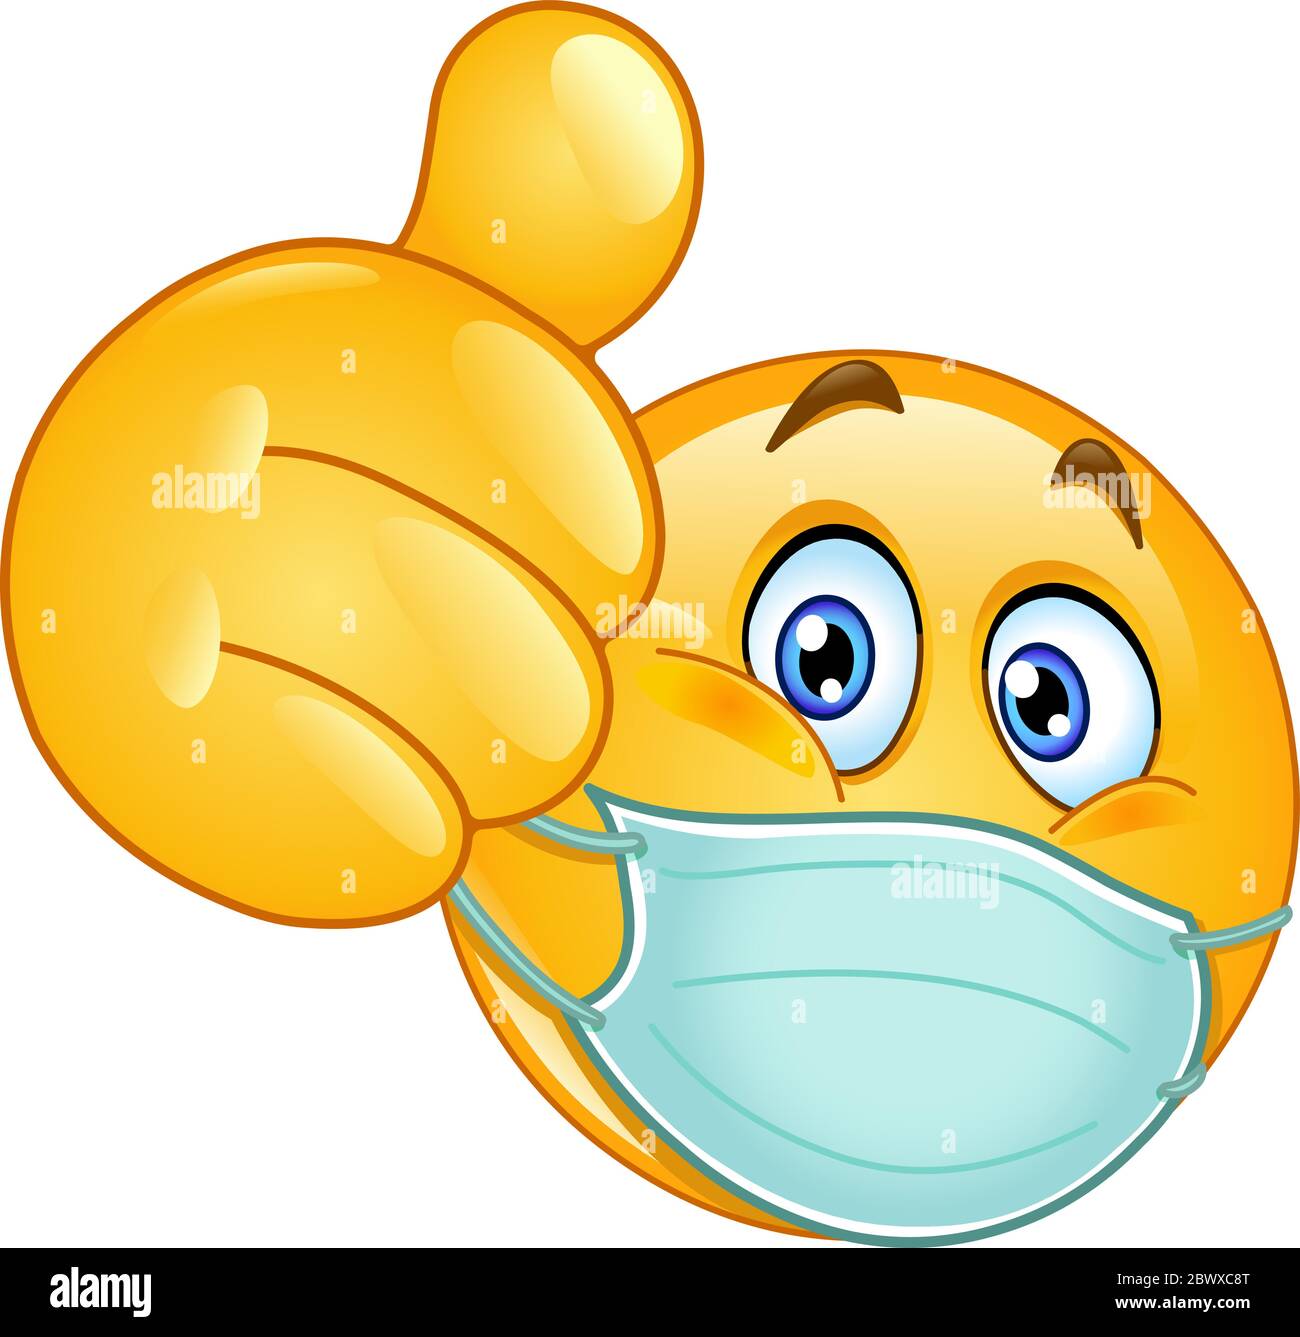 Emoji Emoticon mit medizinischer Maske über dem Mund zeigt Daumen nach oben Stock Vektor